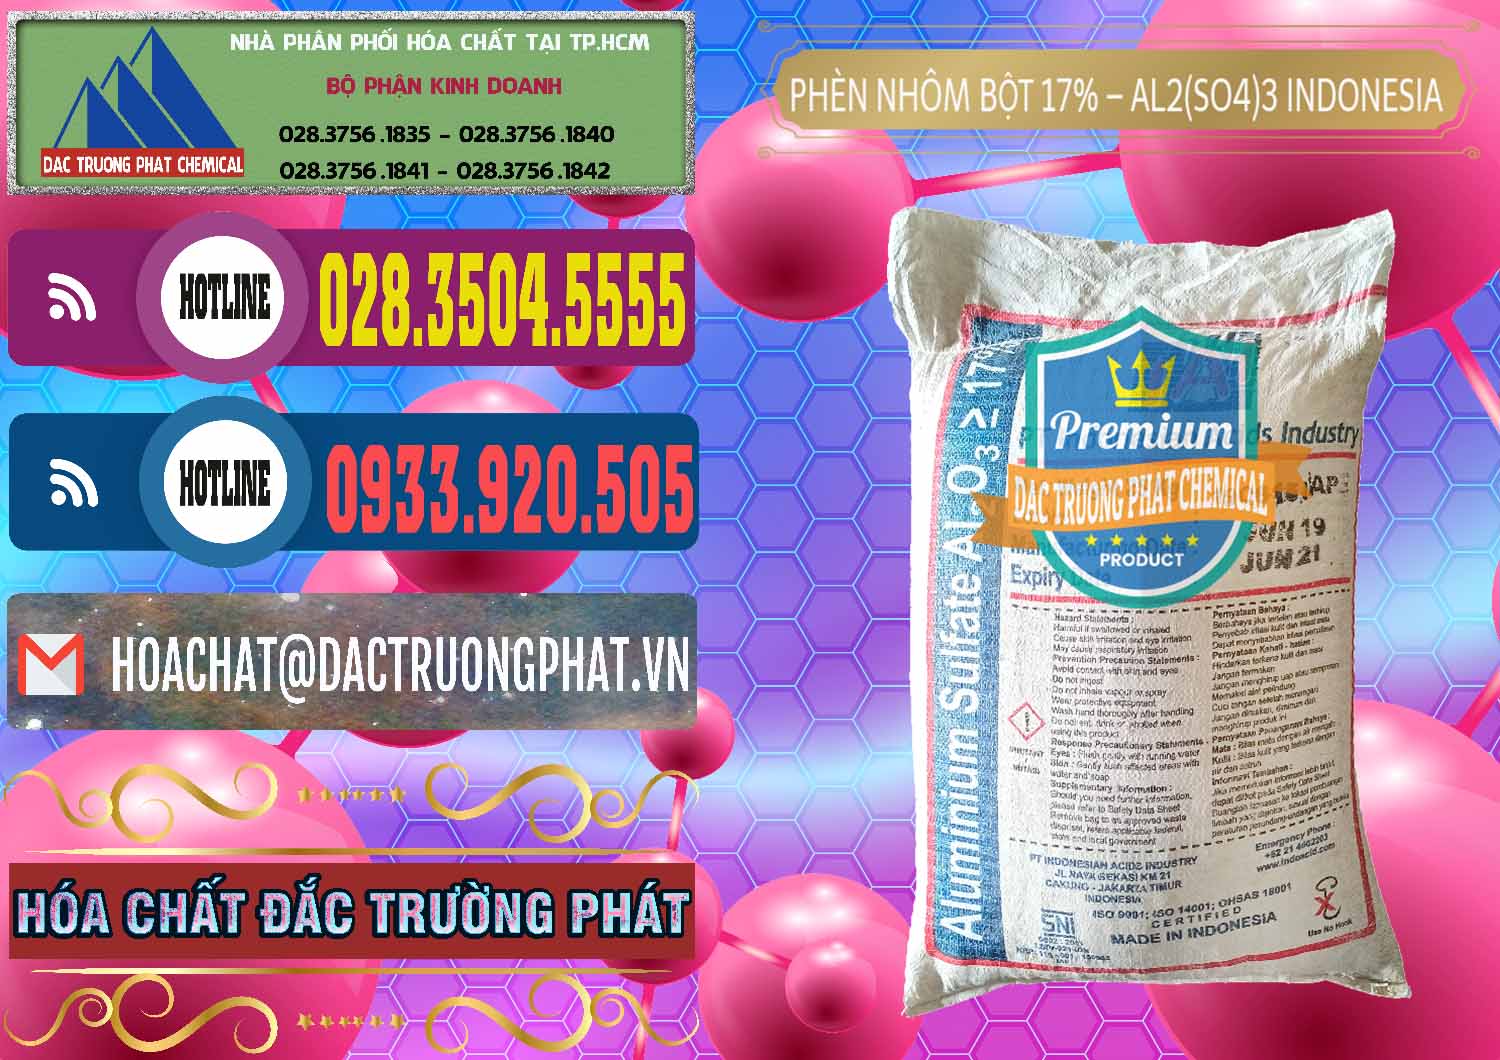 Chuyên cung ứng và bán Phèn Nhôm Bột - Al2(SO4)3 17% bao 25kg Indonesia - 0114 - Nơi phân phối và cung ứng hóa chất tại TP.HCM - muabanhoachat.com.vn